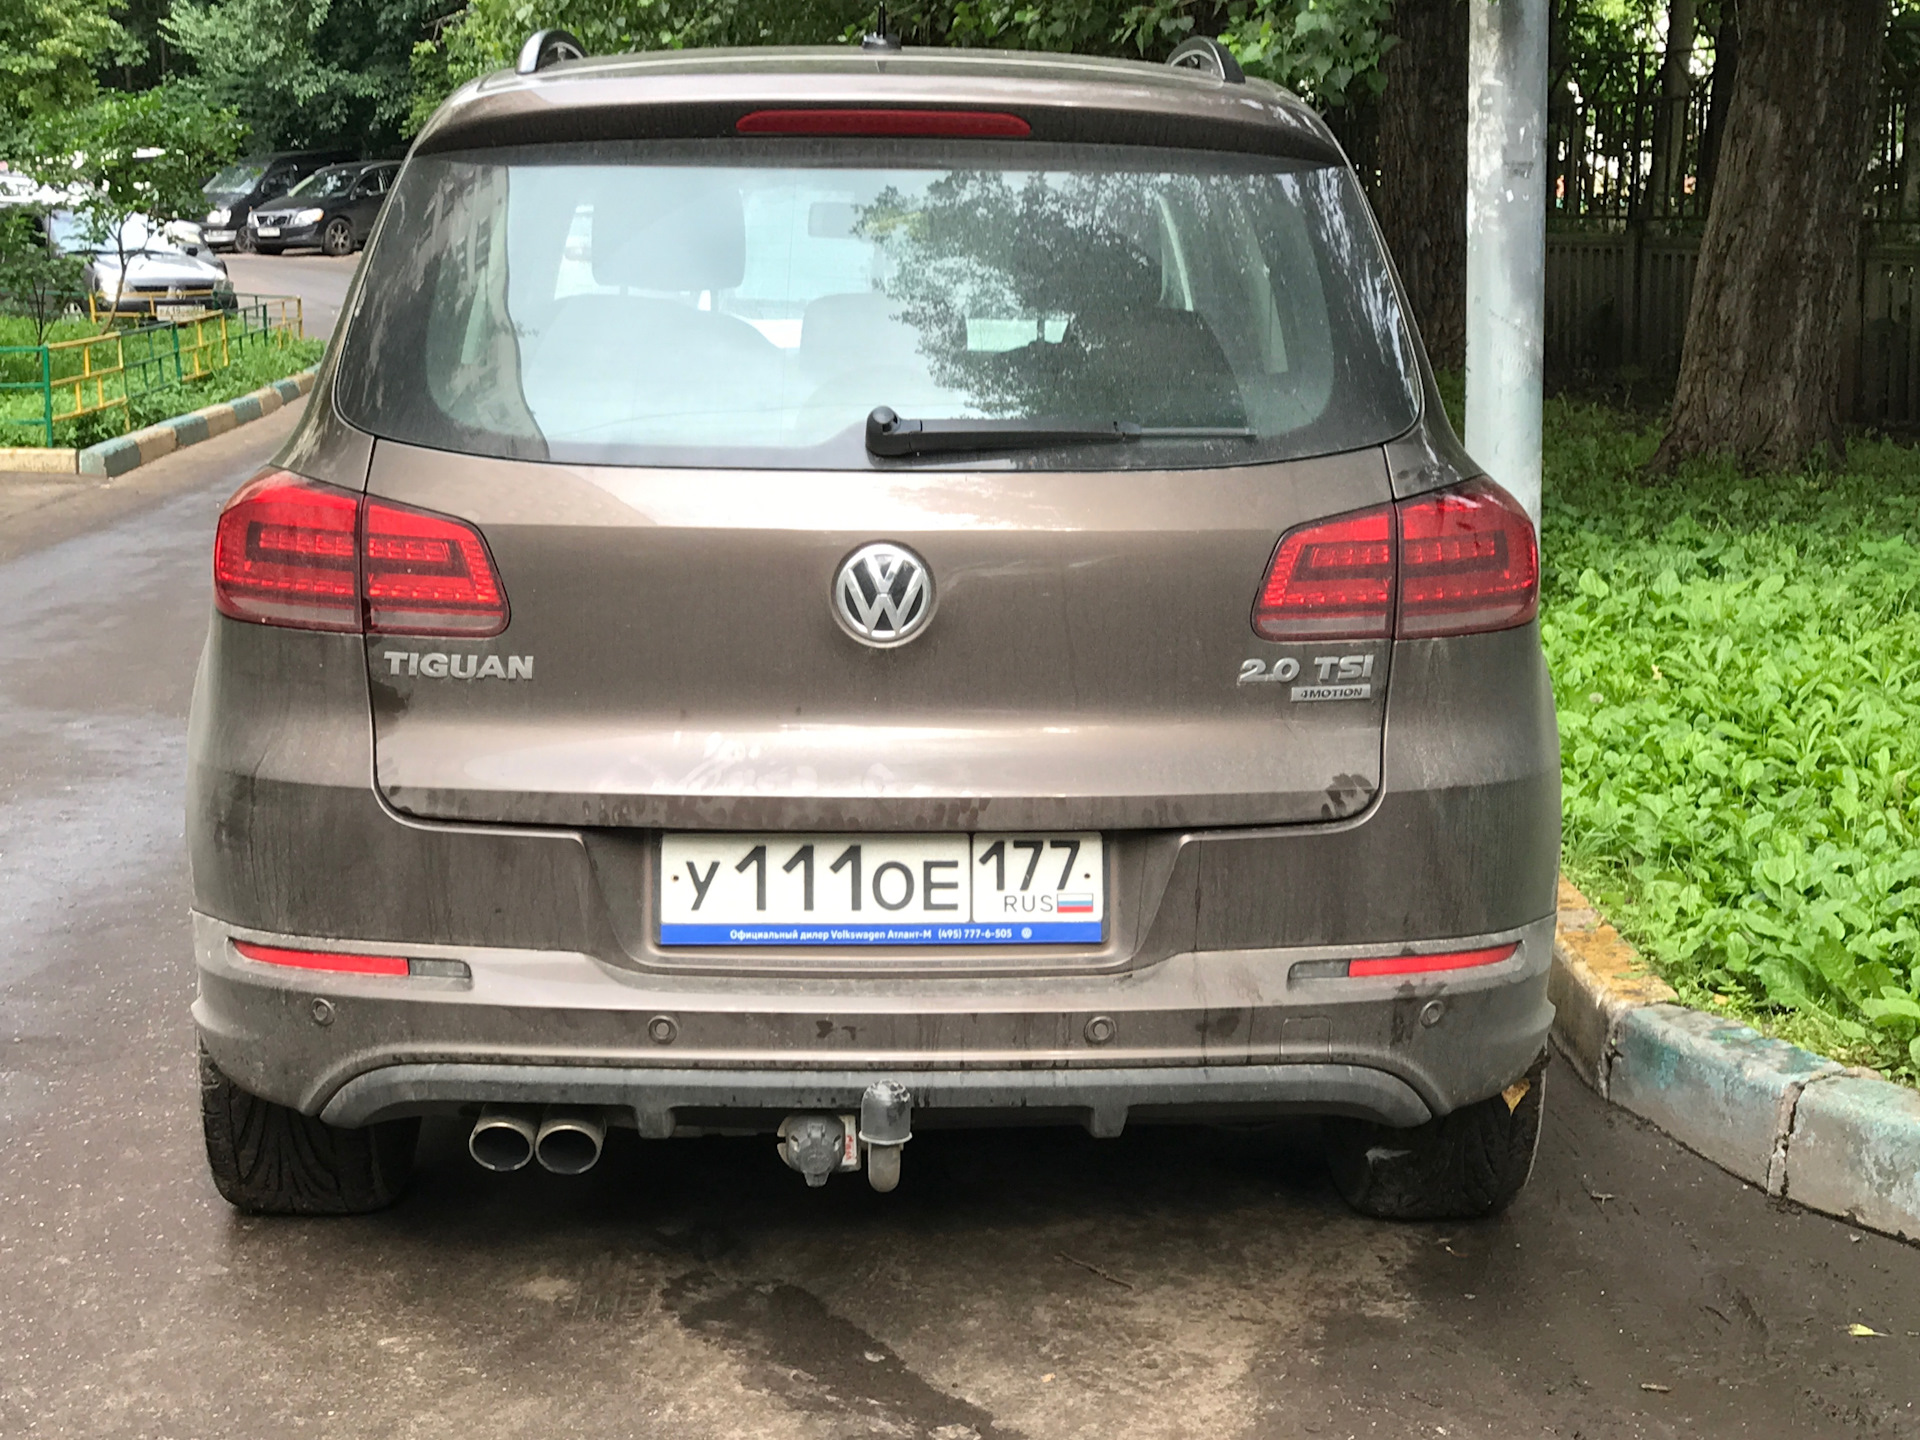 Парктроники тигуан 2. VW Tiguan 2021 парктроник.